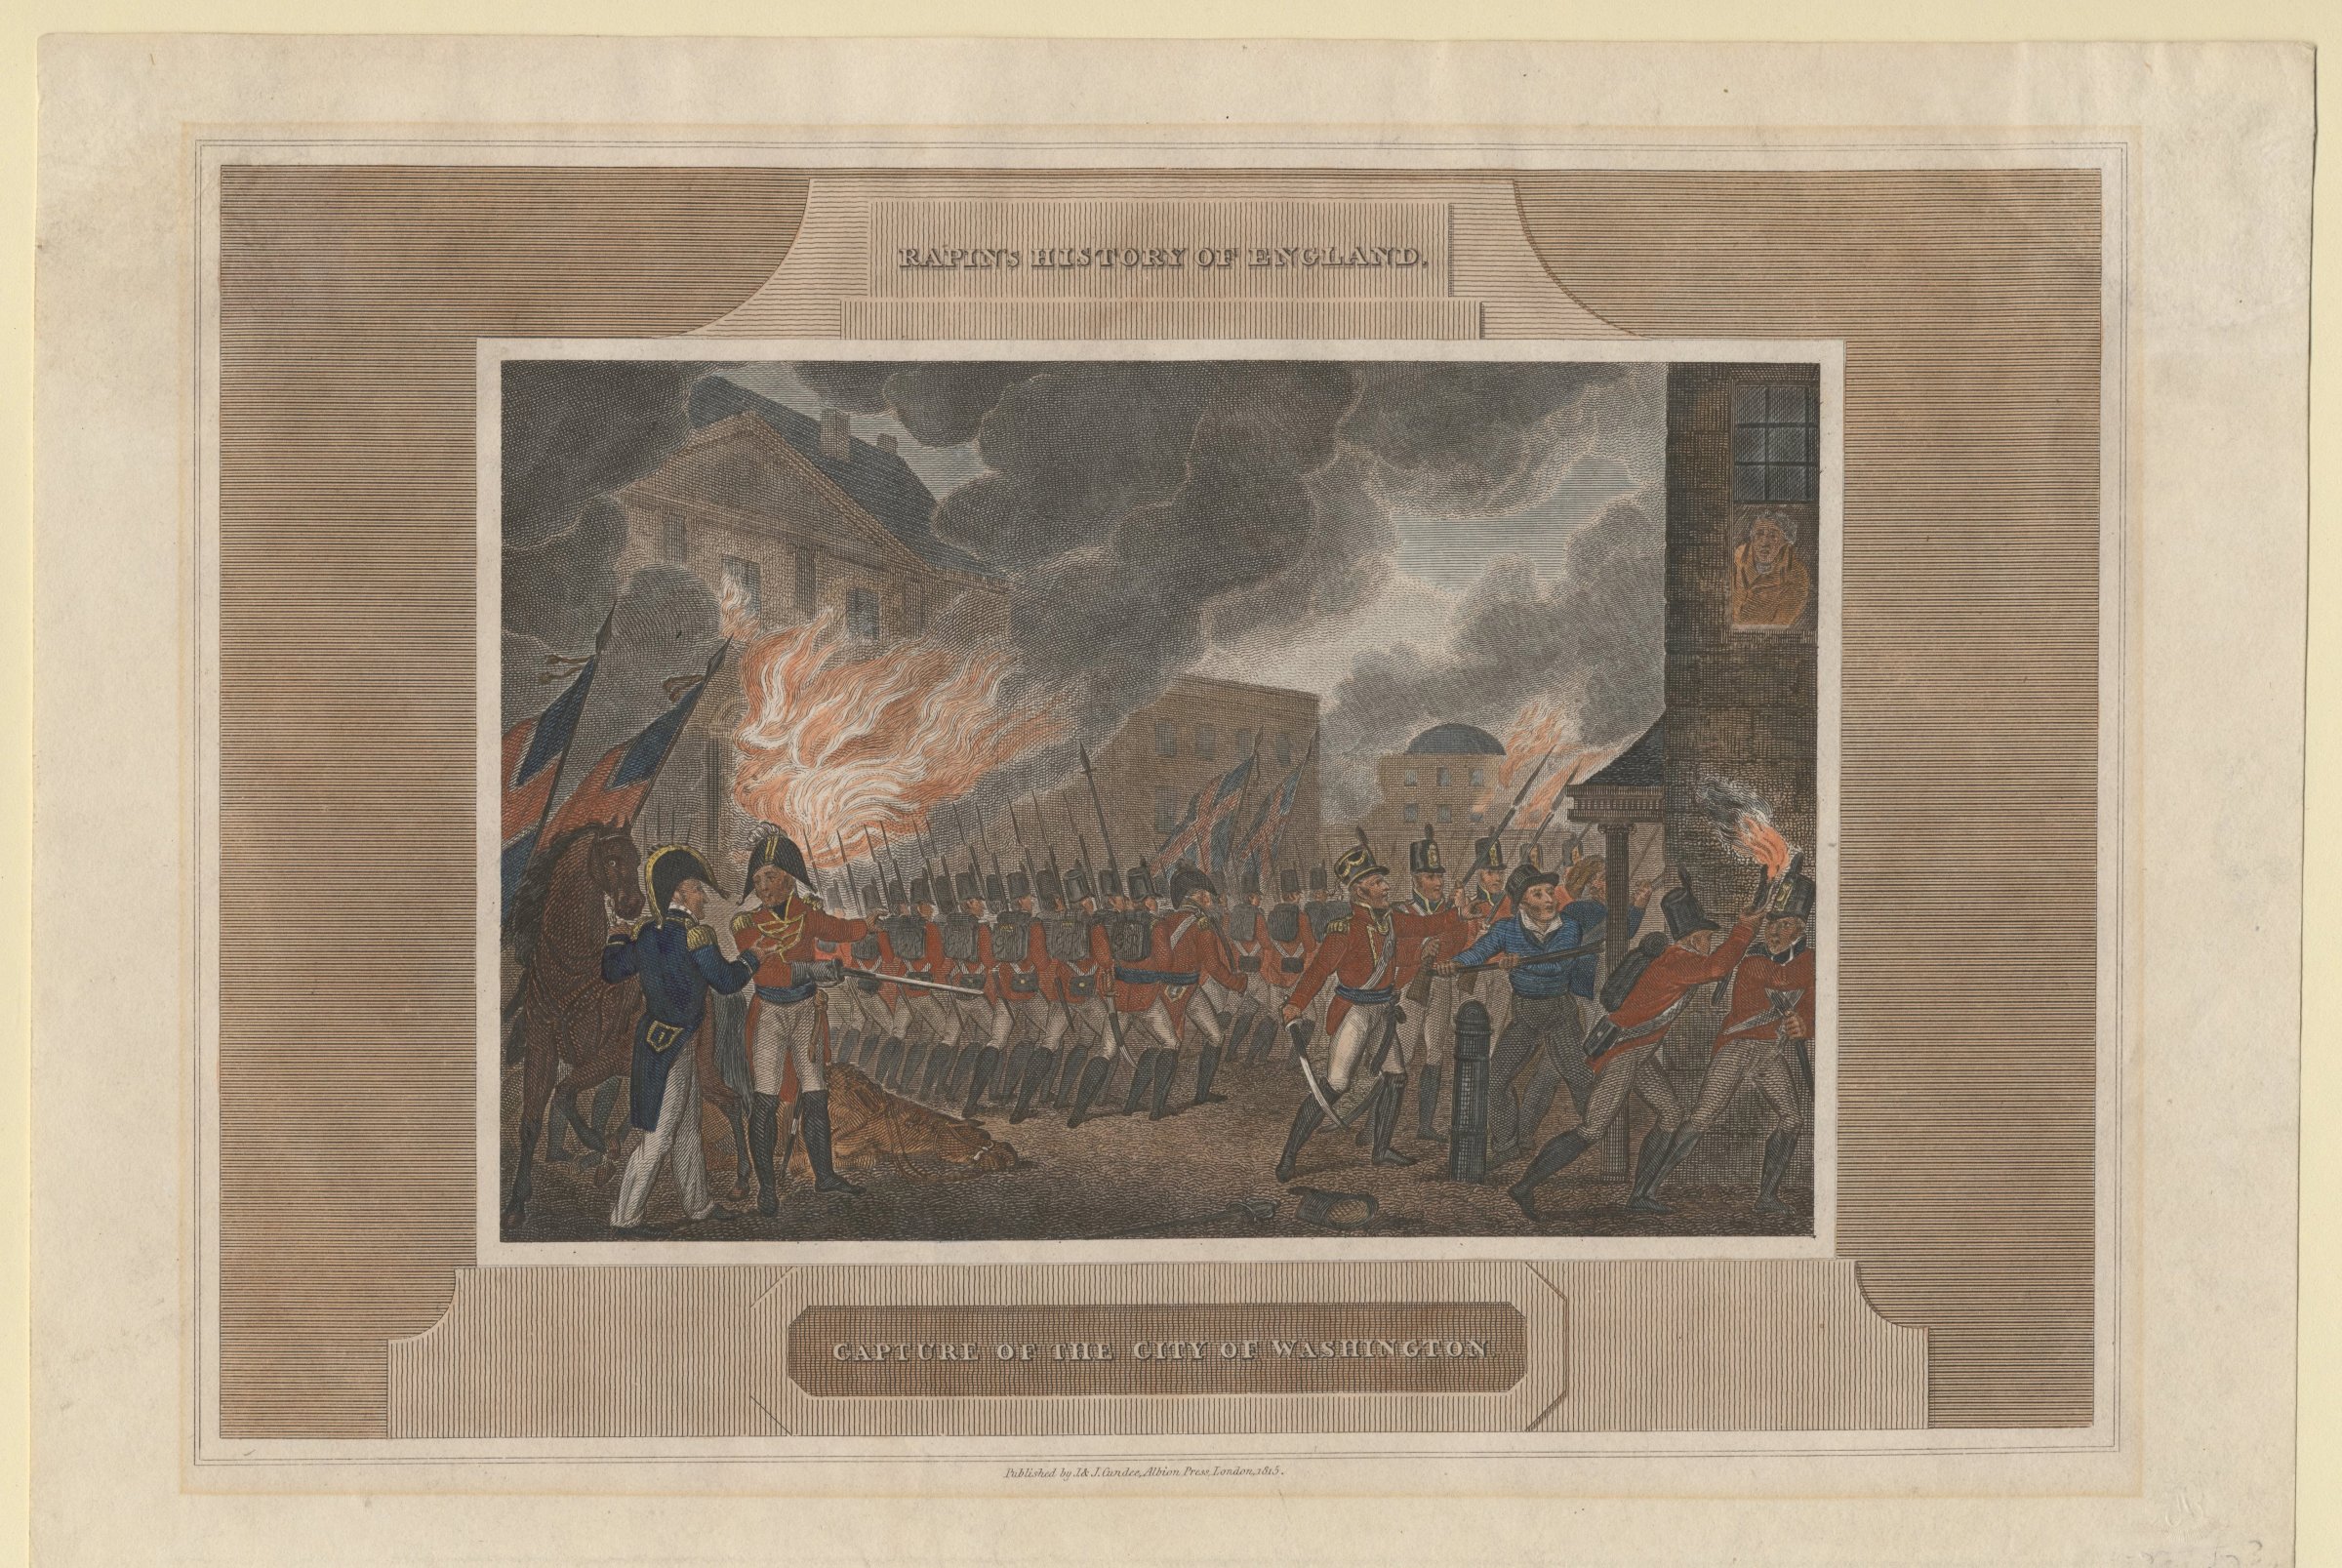 Capture and Burning of the city of Washington, 1815. White House